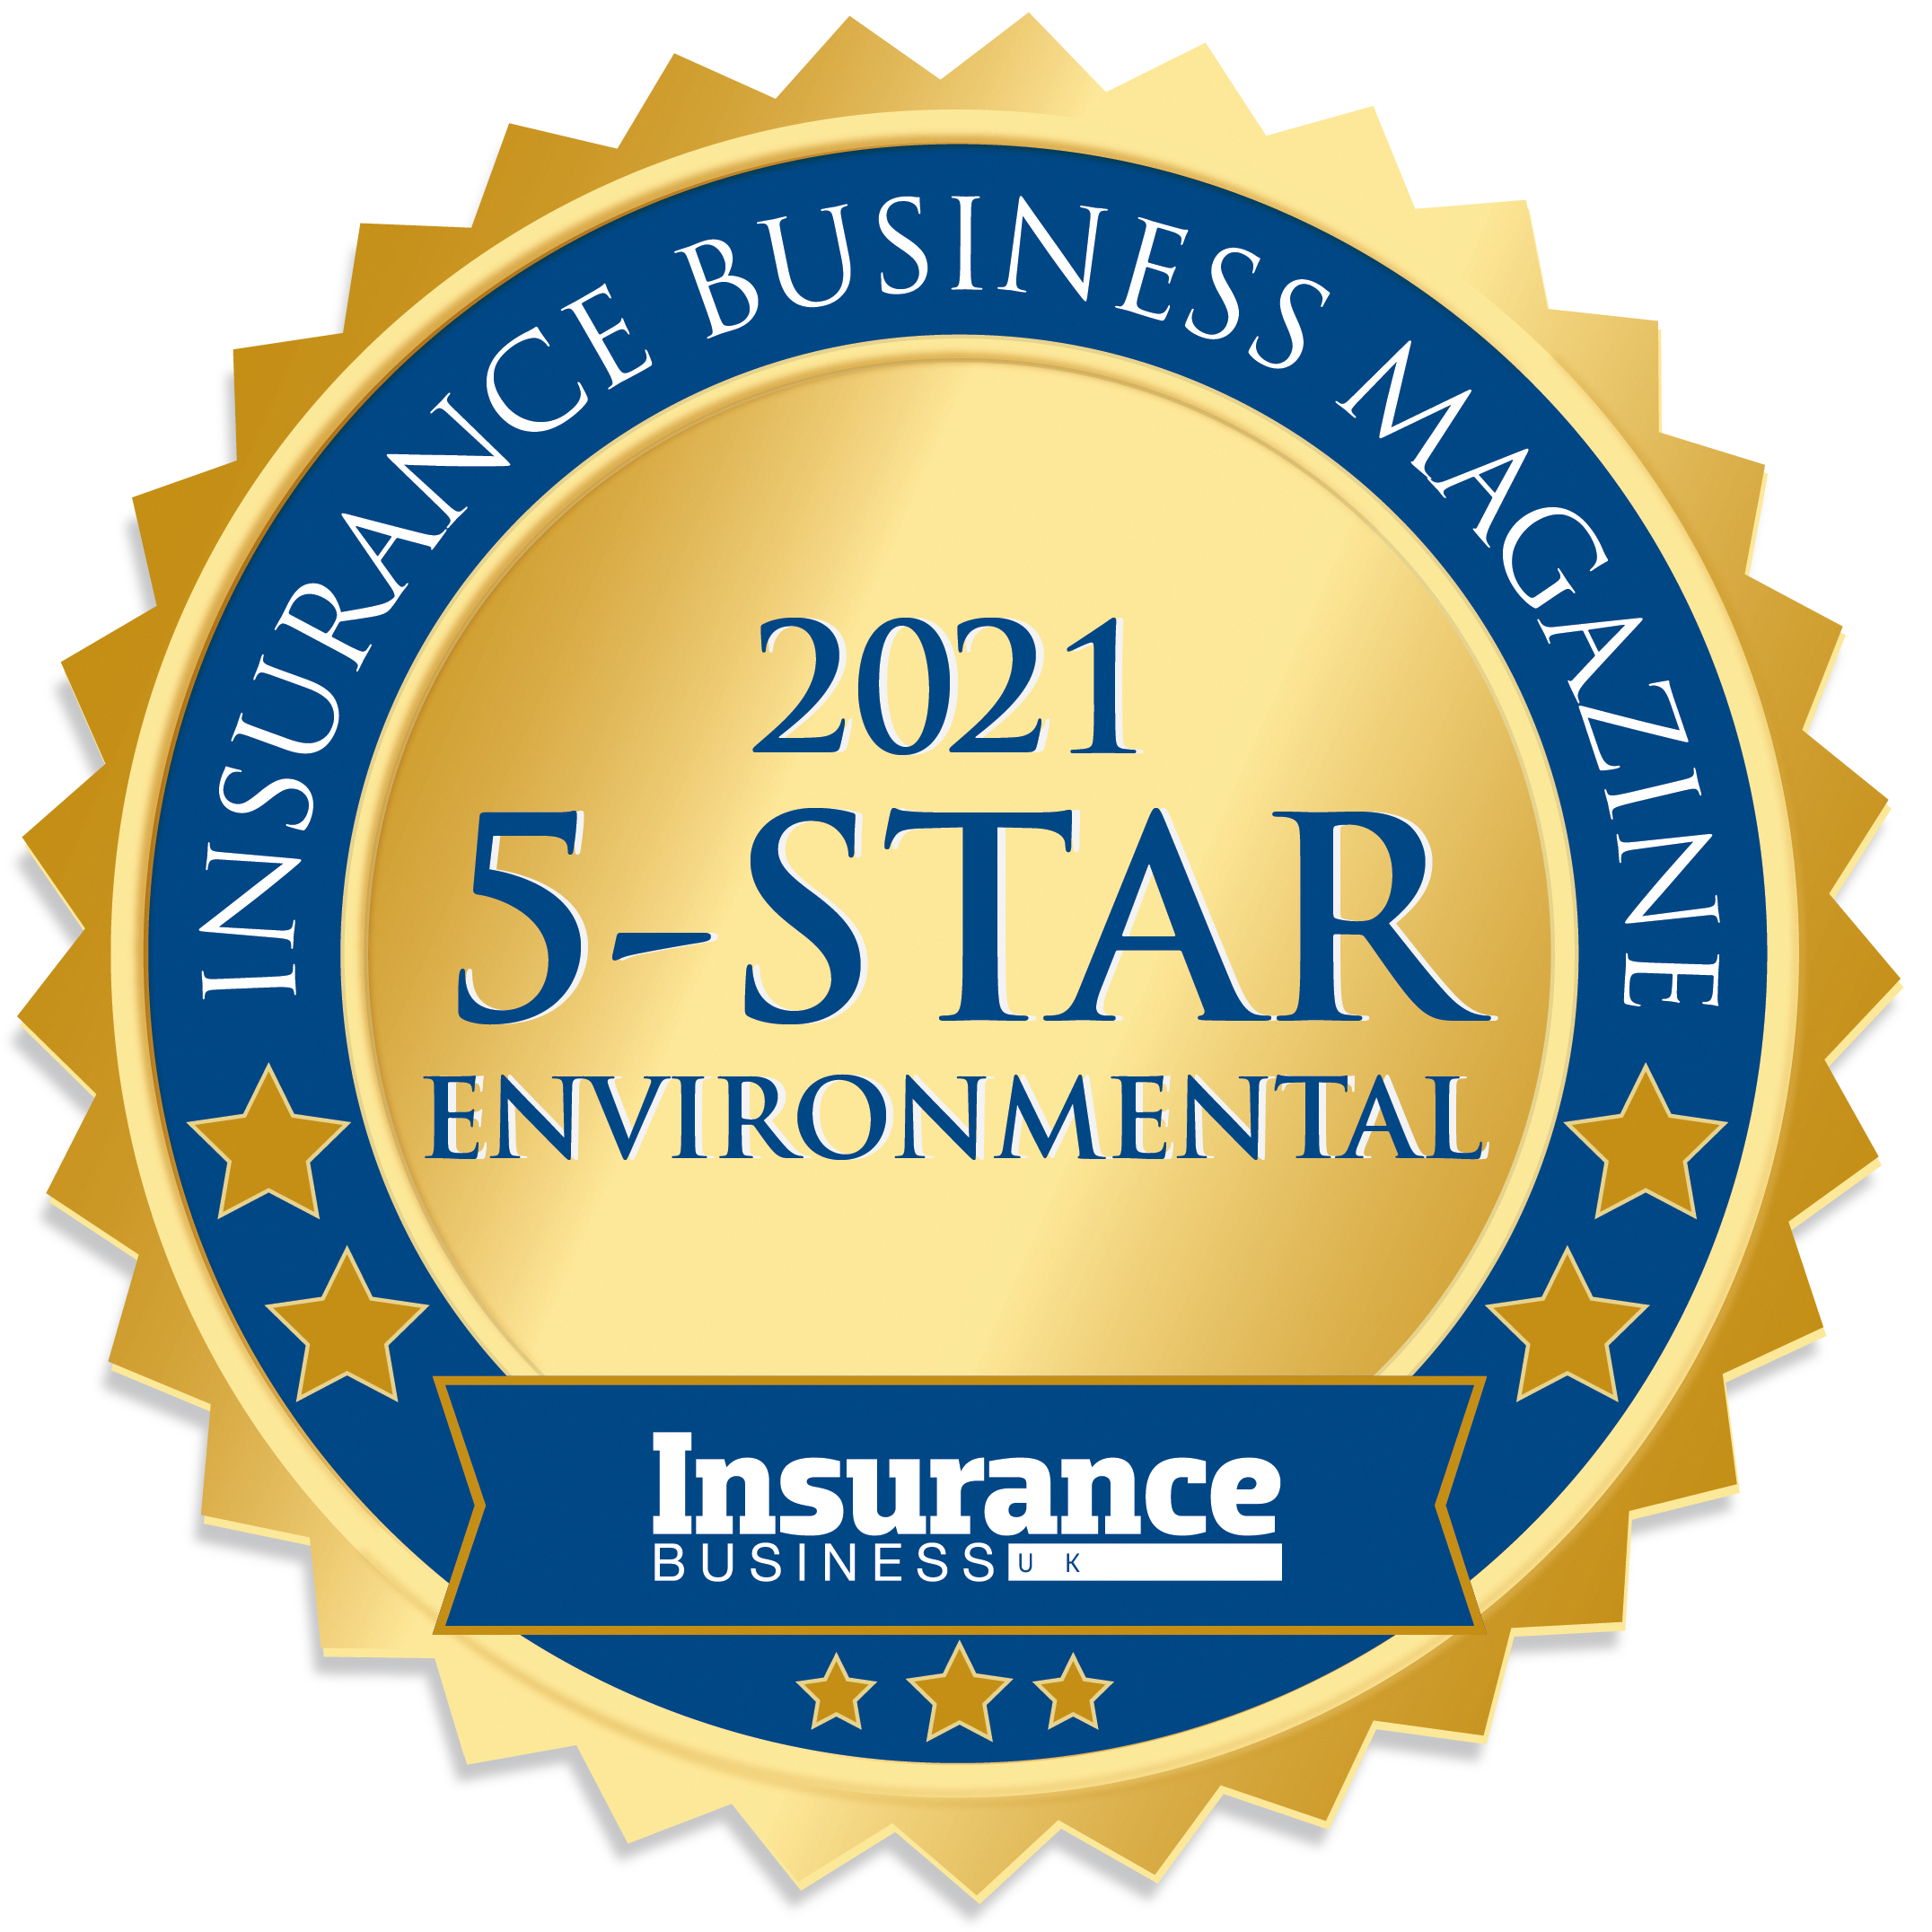 Insurance Business UK 5-Star Environmental 2021 medal 